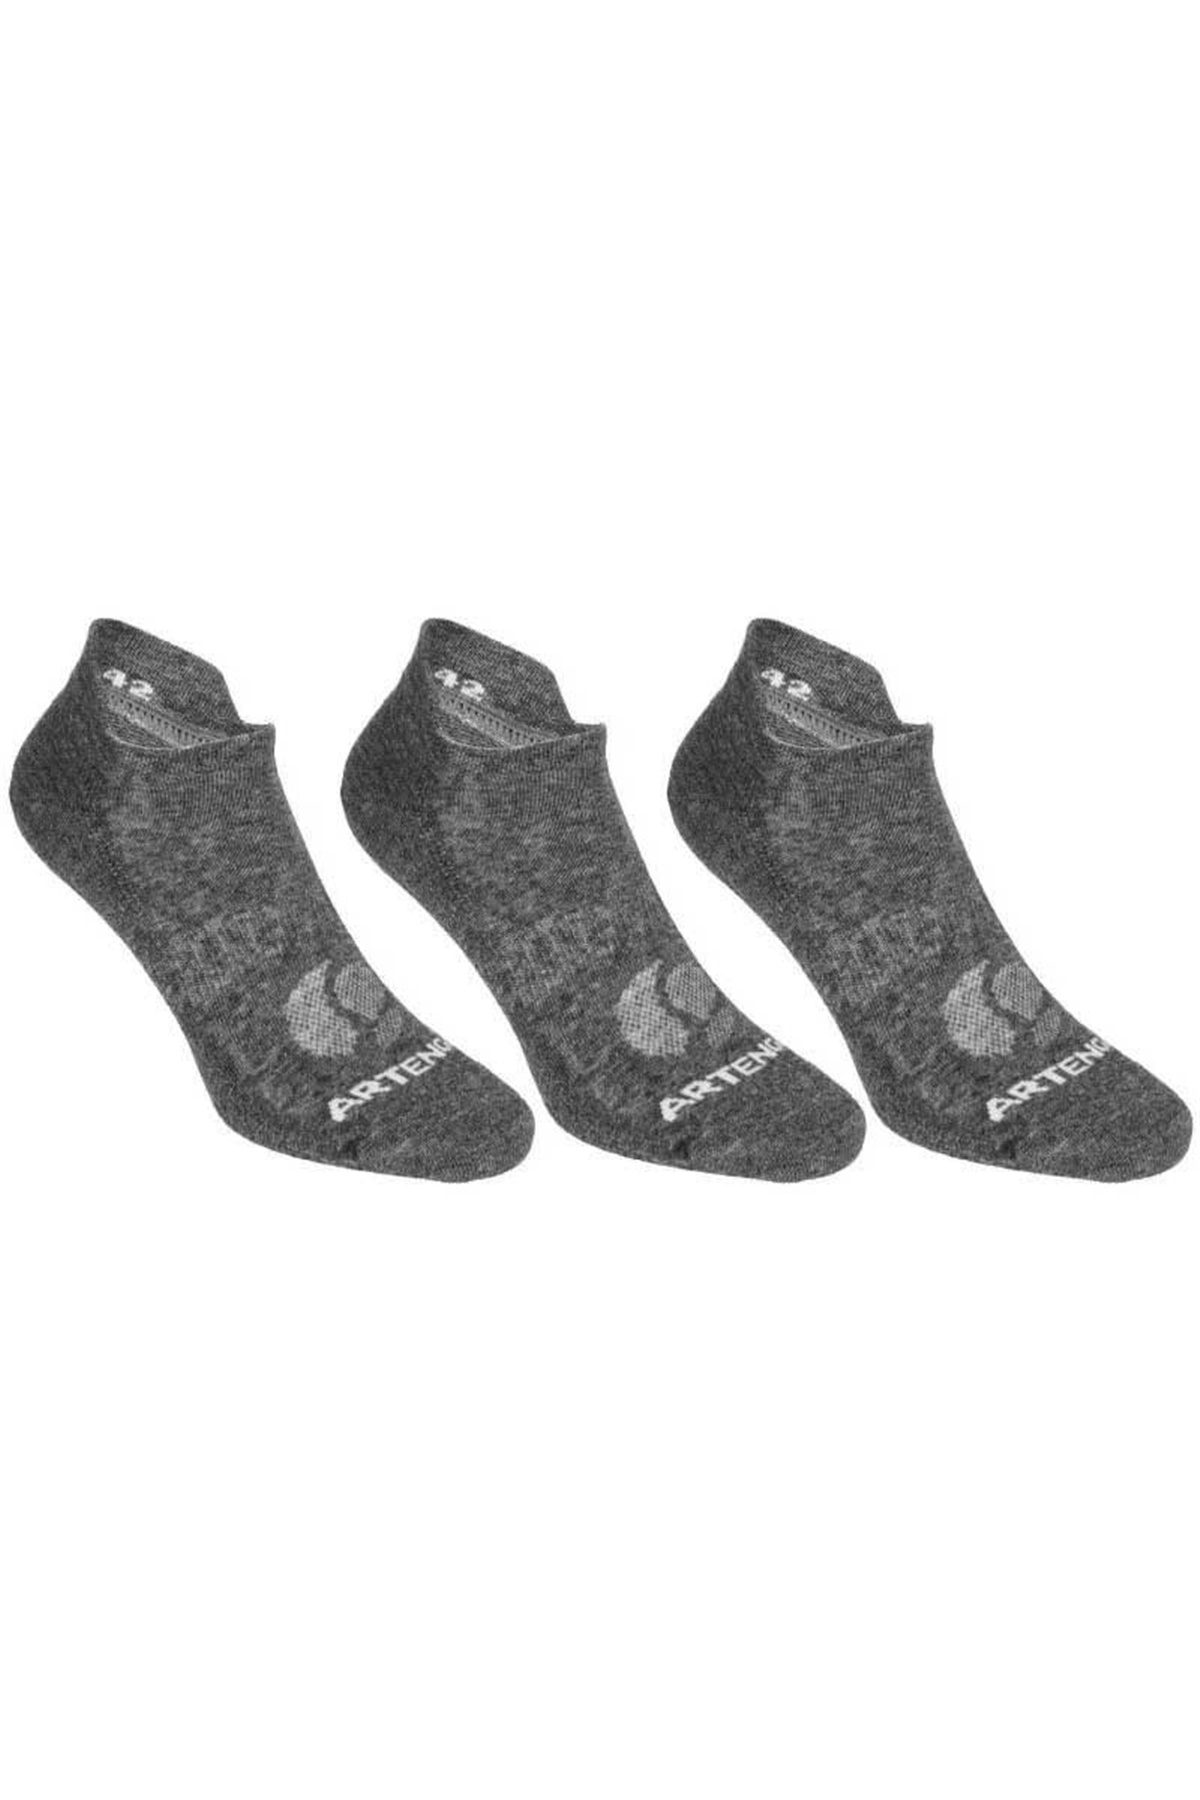 Gri Renk Çorap, Kısa Çorap C1144-2